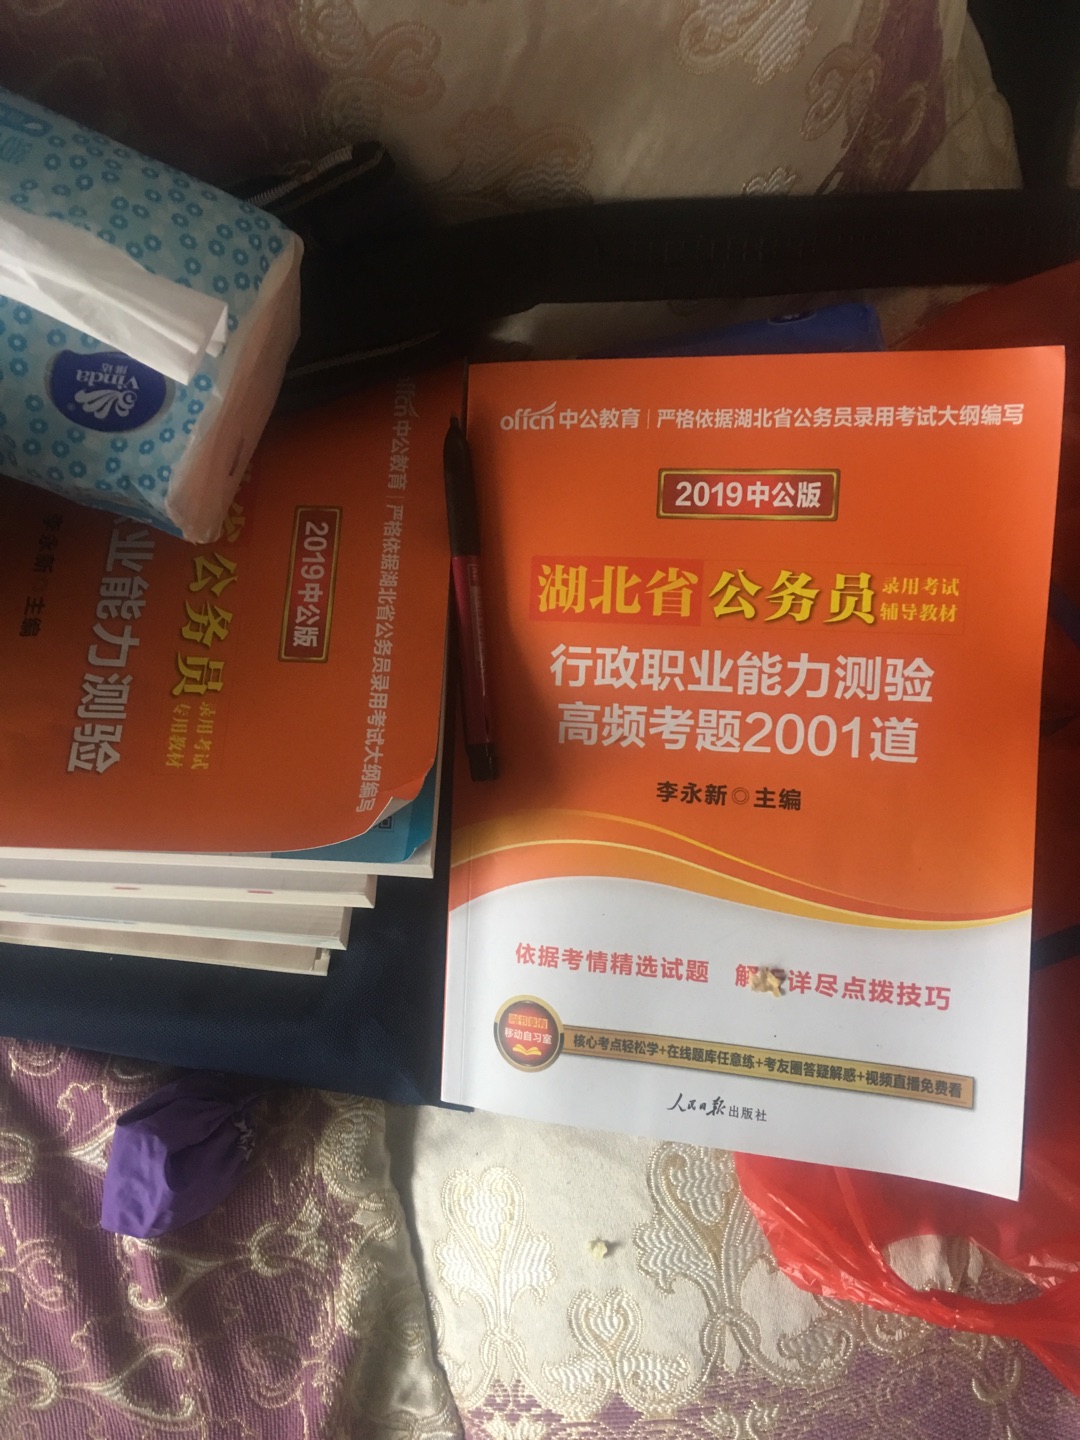 准备迎考2019年的湖北省考，在自营买中公的学习用书，非常满意价格跟质量，是正品